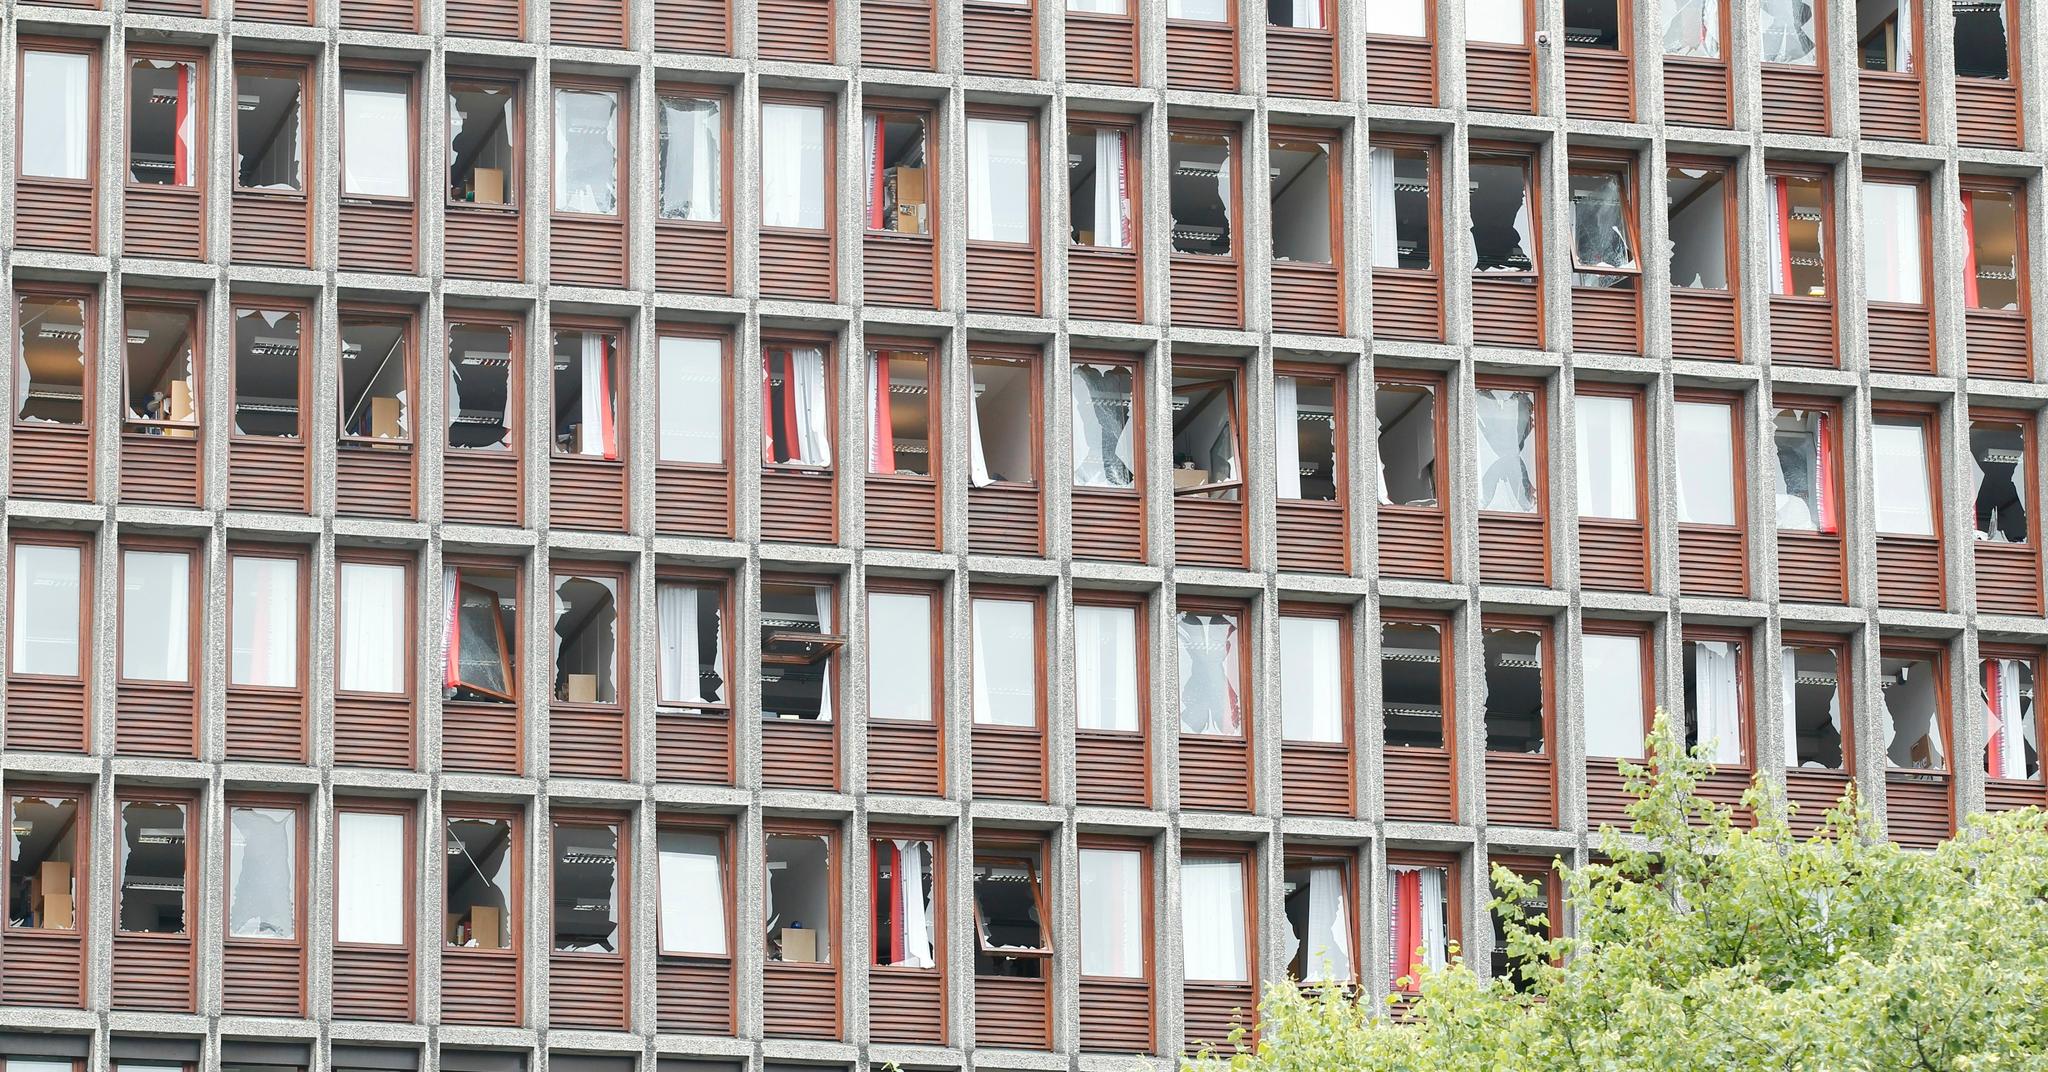  Høyblokken i Regjeringskvartalet med knuste vinduer etter bombeeksplosjonen under terrorangrepet 22. juli. 